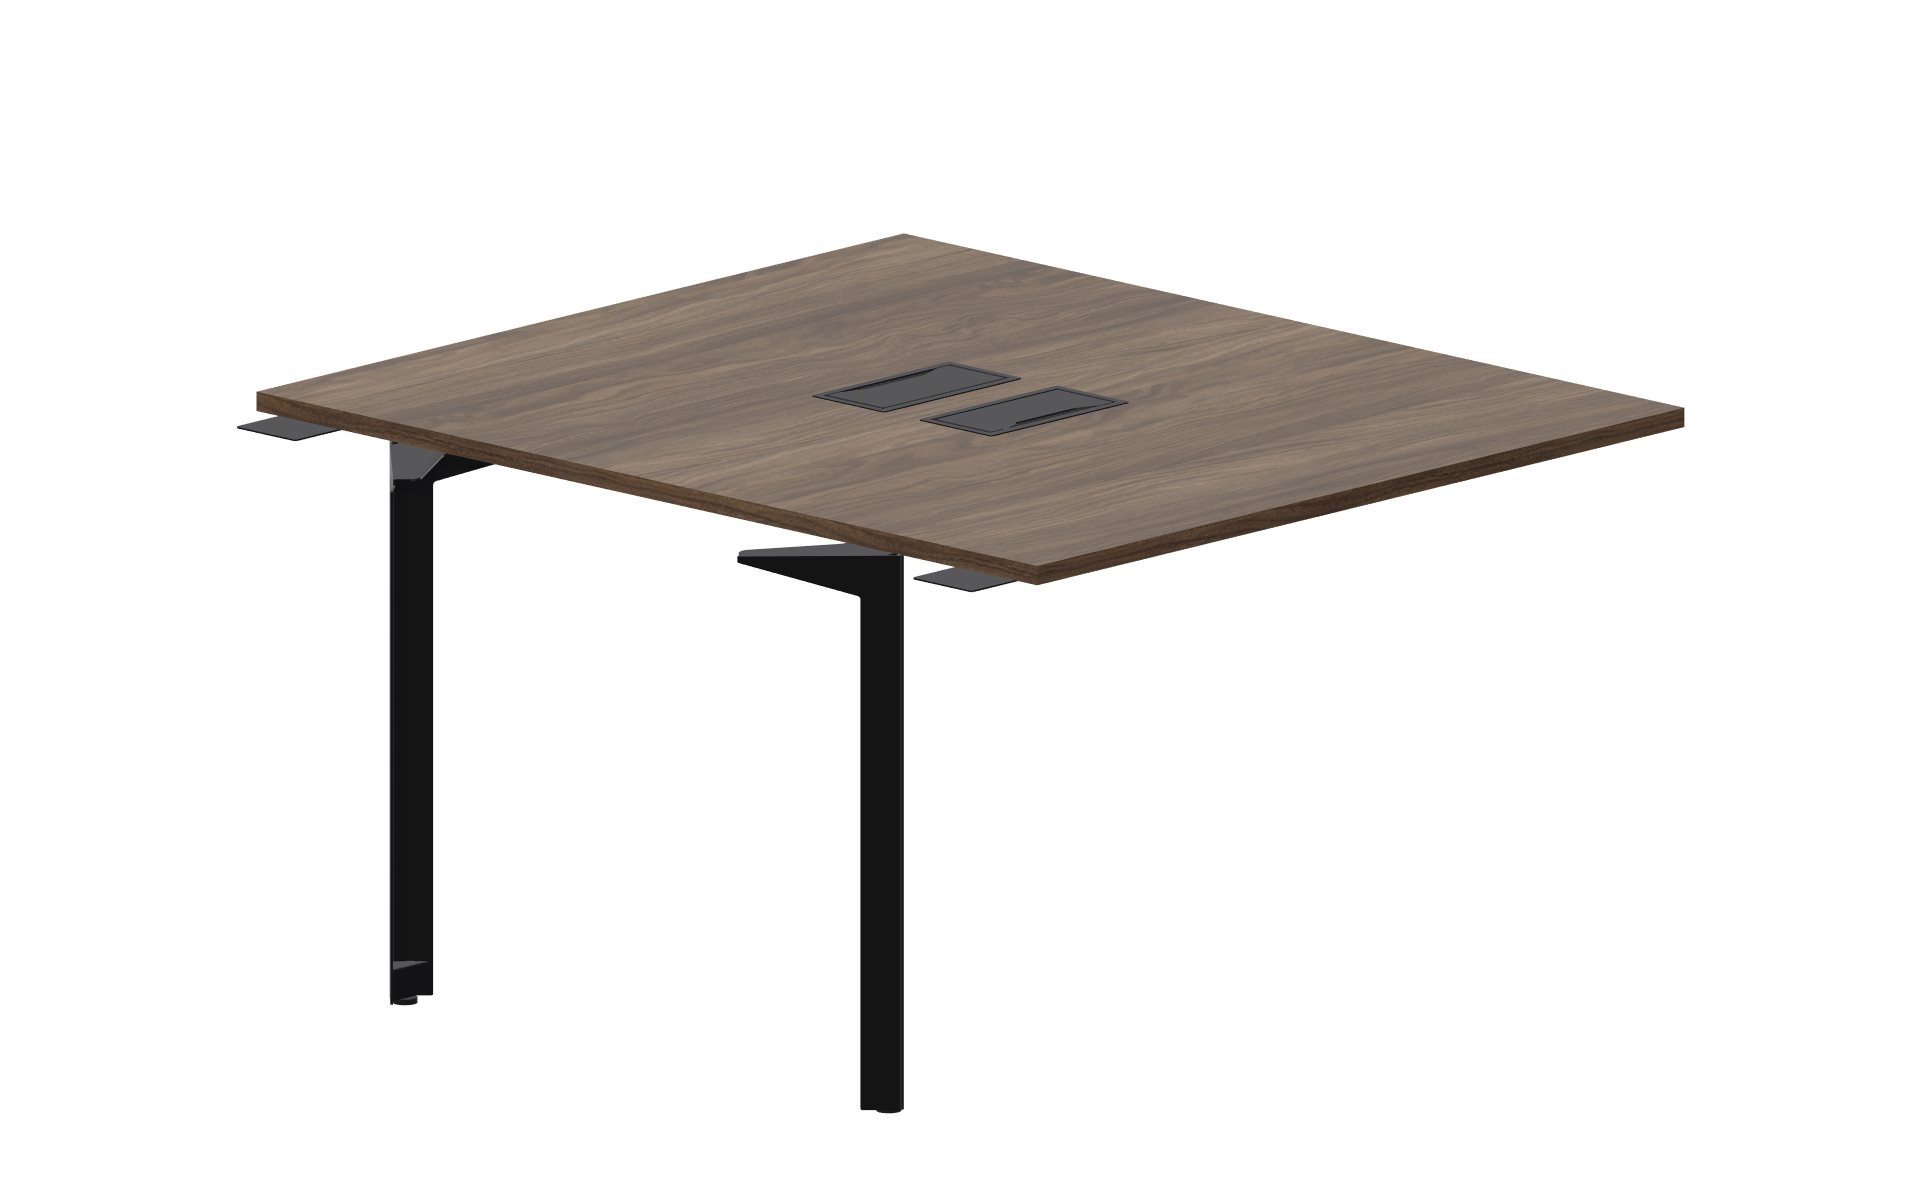 Приставной стол bench на 2 рабочих места 118х136,6х75 см (2 металлических аутлета) Ray RY2TPL127